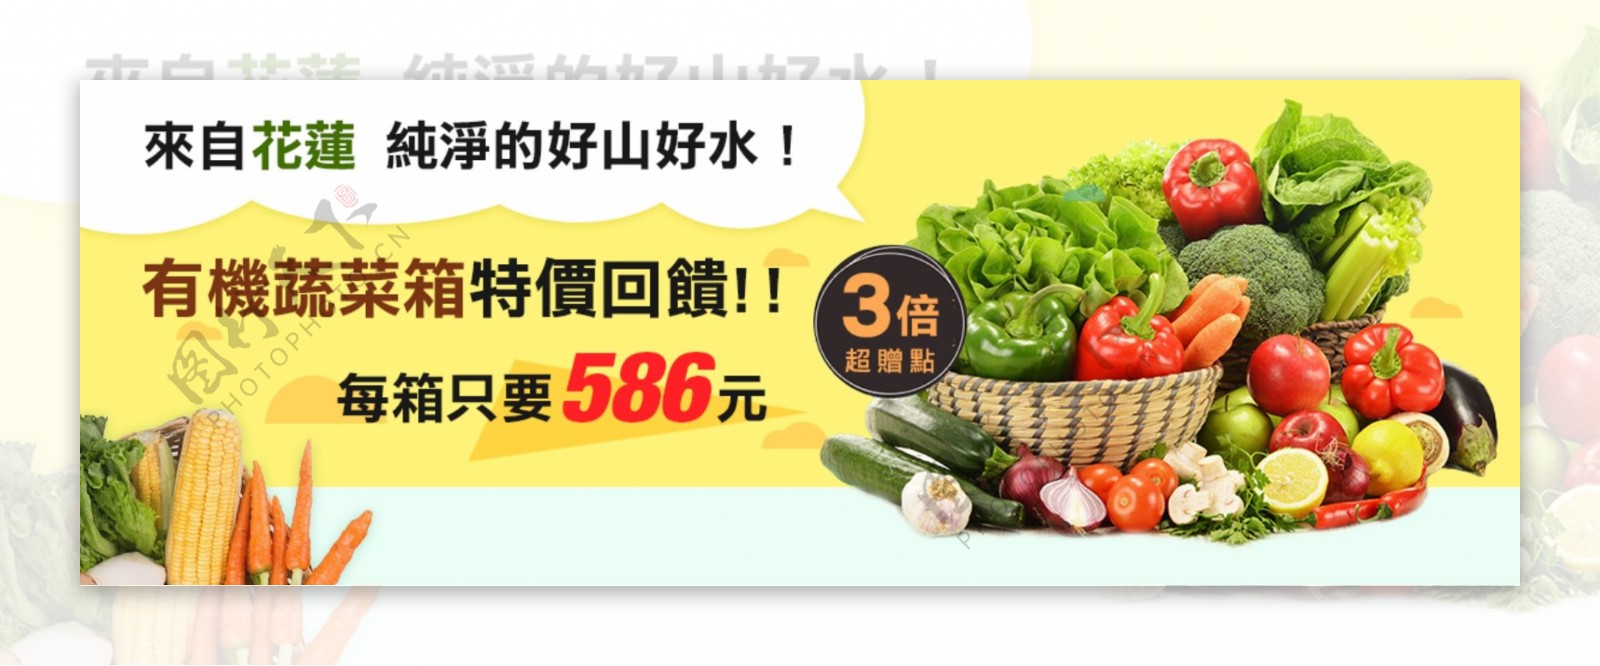 有机蔬菜箱banner